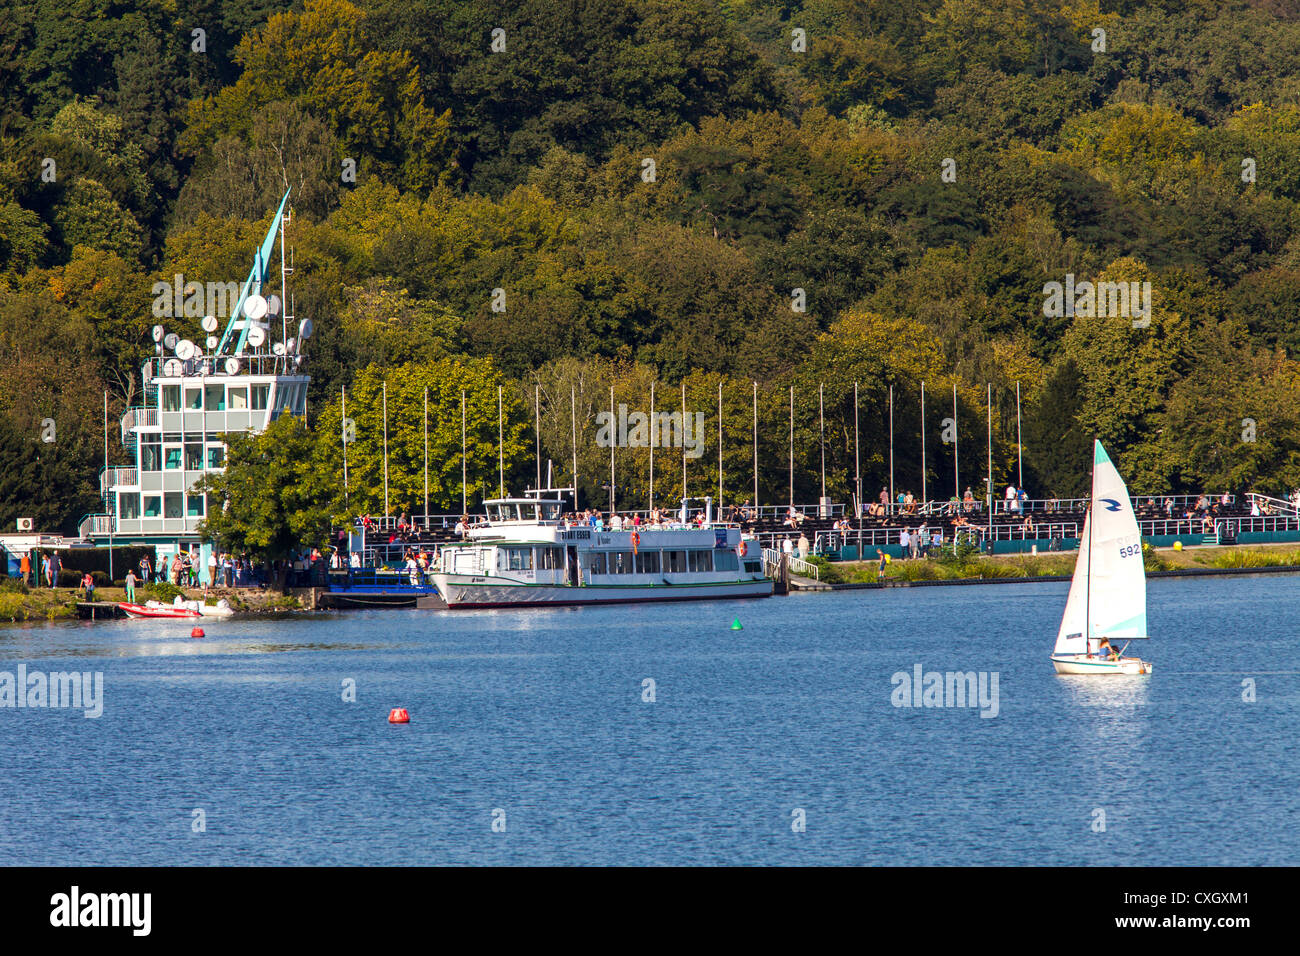 Wasser Sportaktivität am Baldeneysee See, ein Stausee des Flusses Ruhr, Essen, Deutschland. Stockfoto